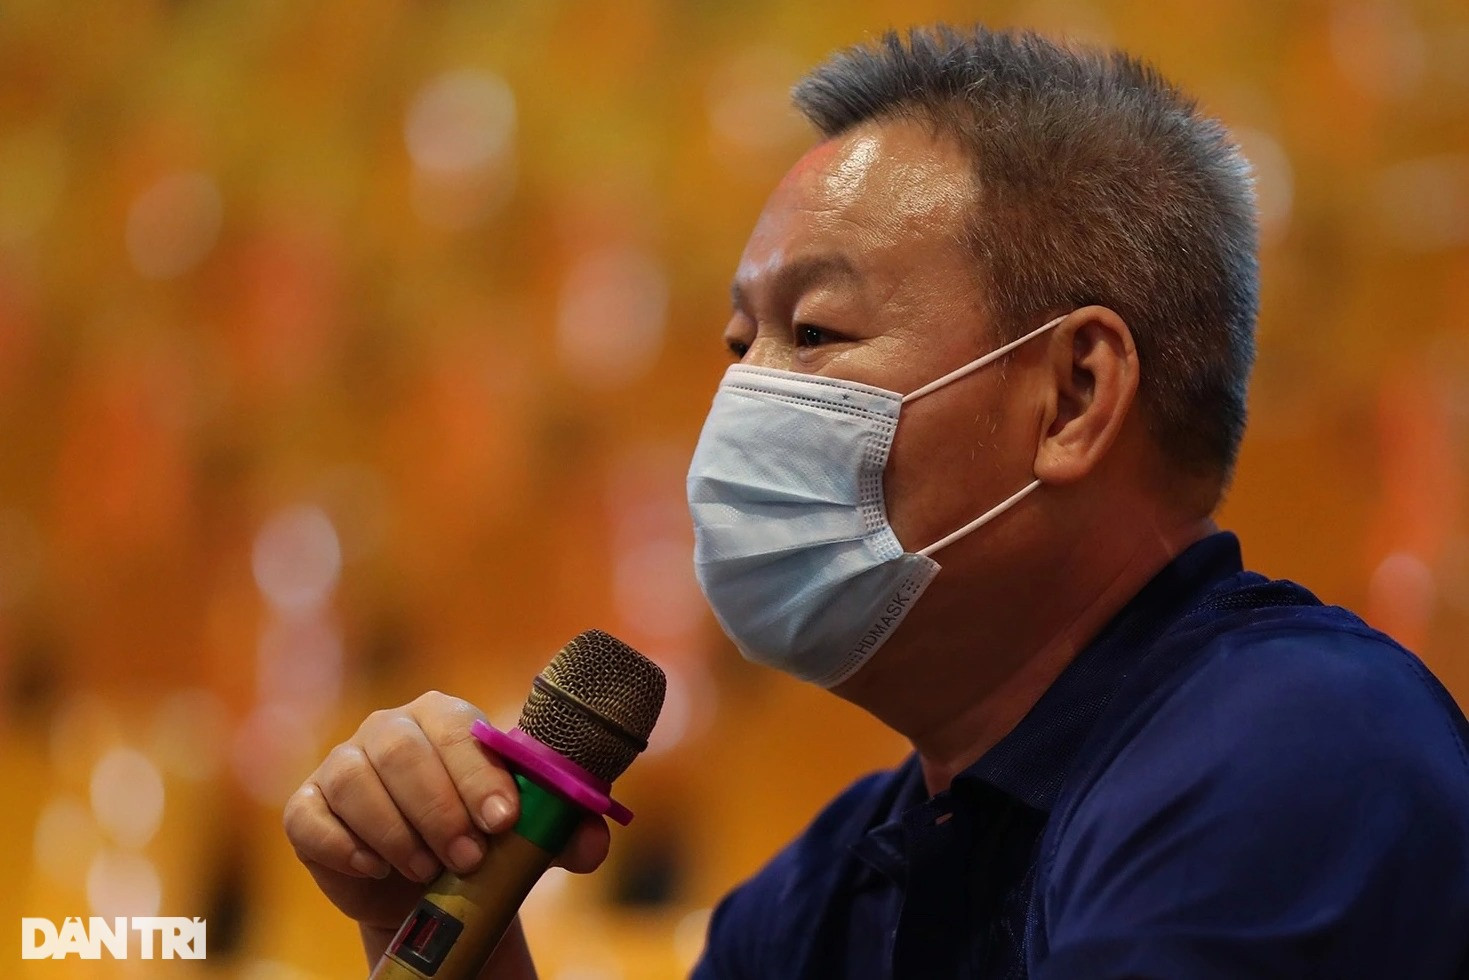 Gánh xiếc ở Sài Gòn biểu diễn online, gắng hồi sinh sau đại dịch - 11